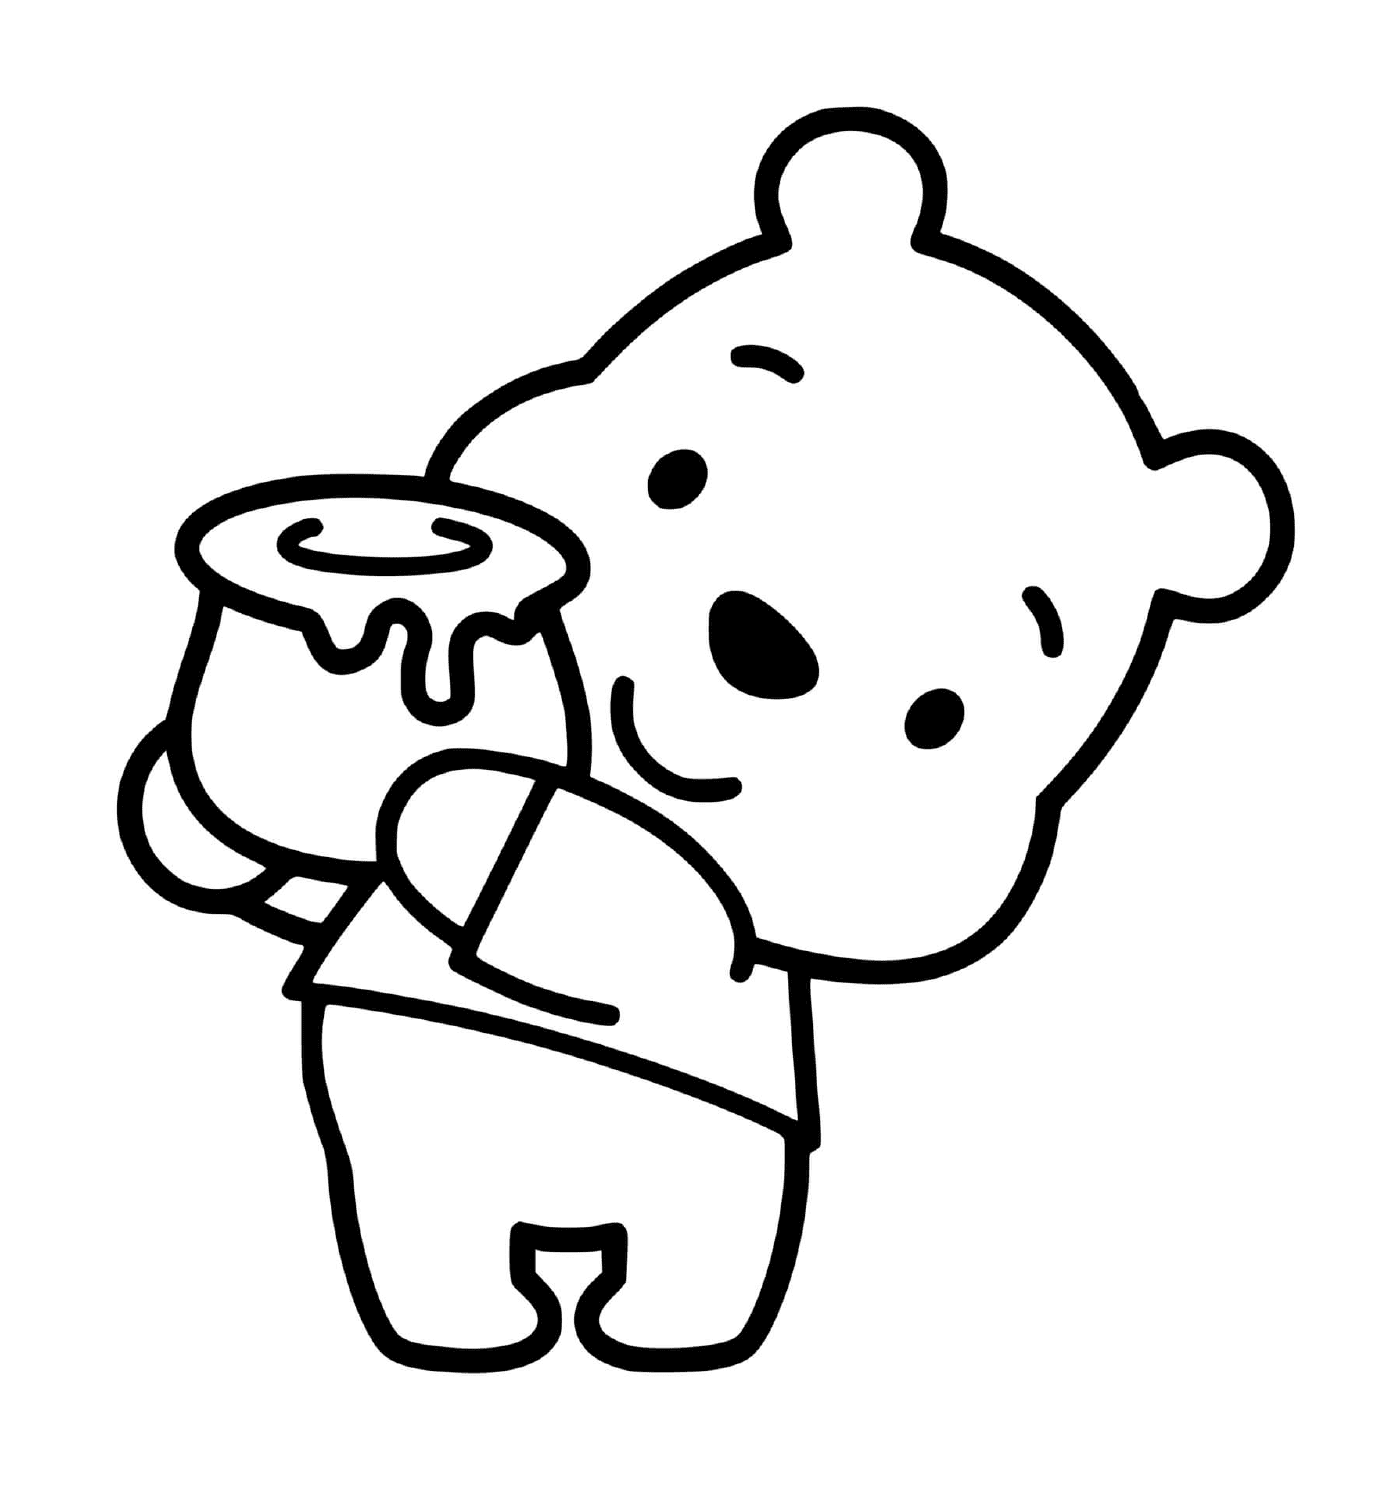  O Urso Winnie usa um pote de mel 